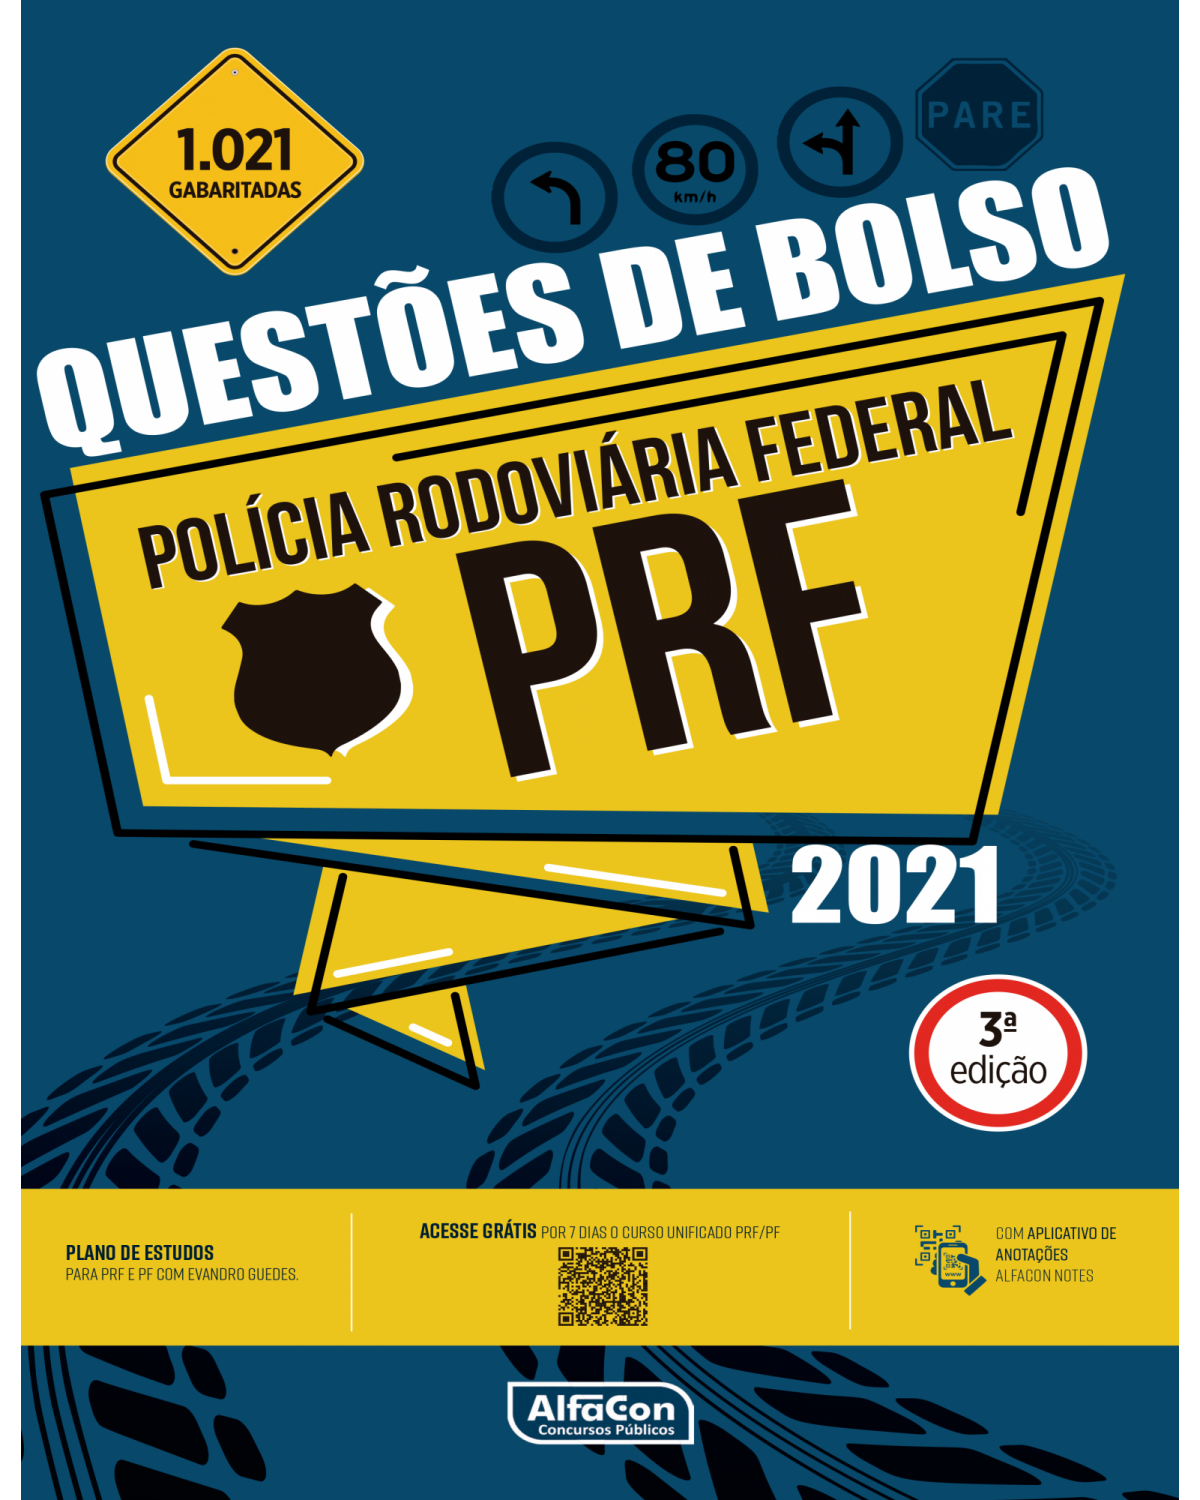 Questões de bolso - Polícia Rodoviária Federal - 3ª Edição | 2021